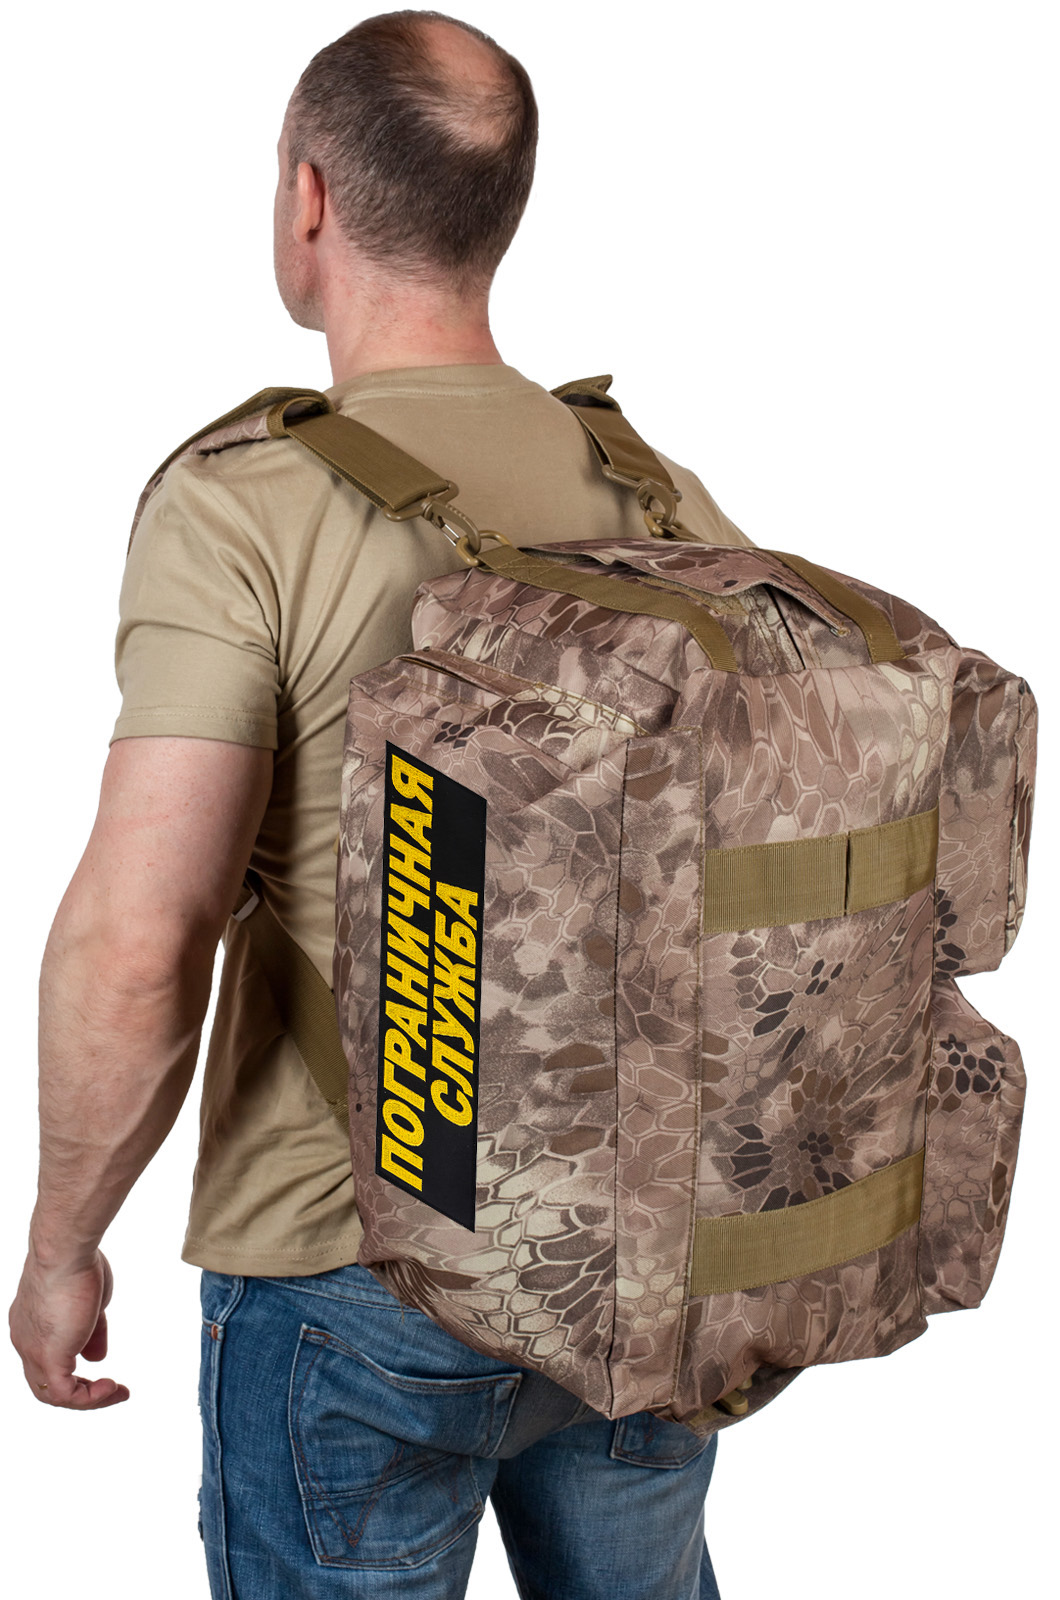 Военная дорожная сумка ПС (камуфляж Kryptek Nomad) 